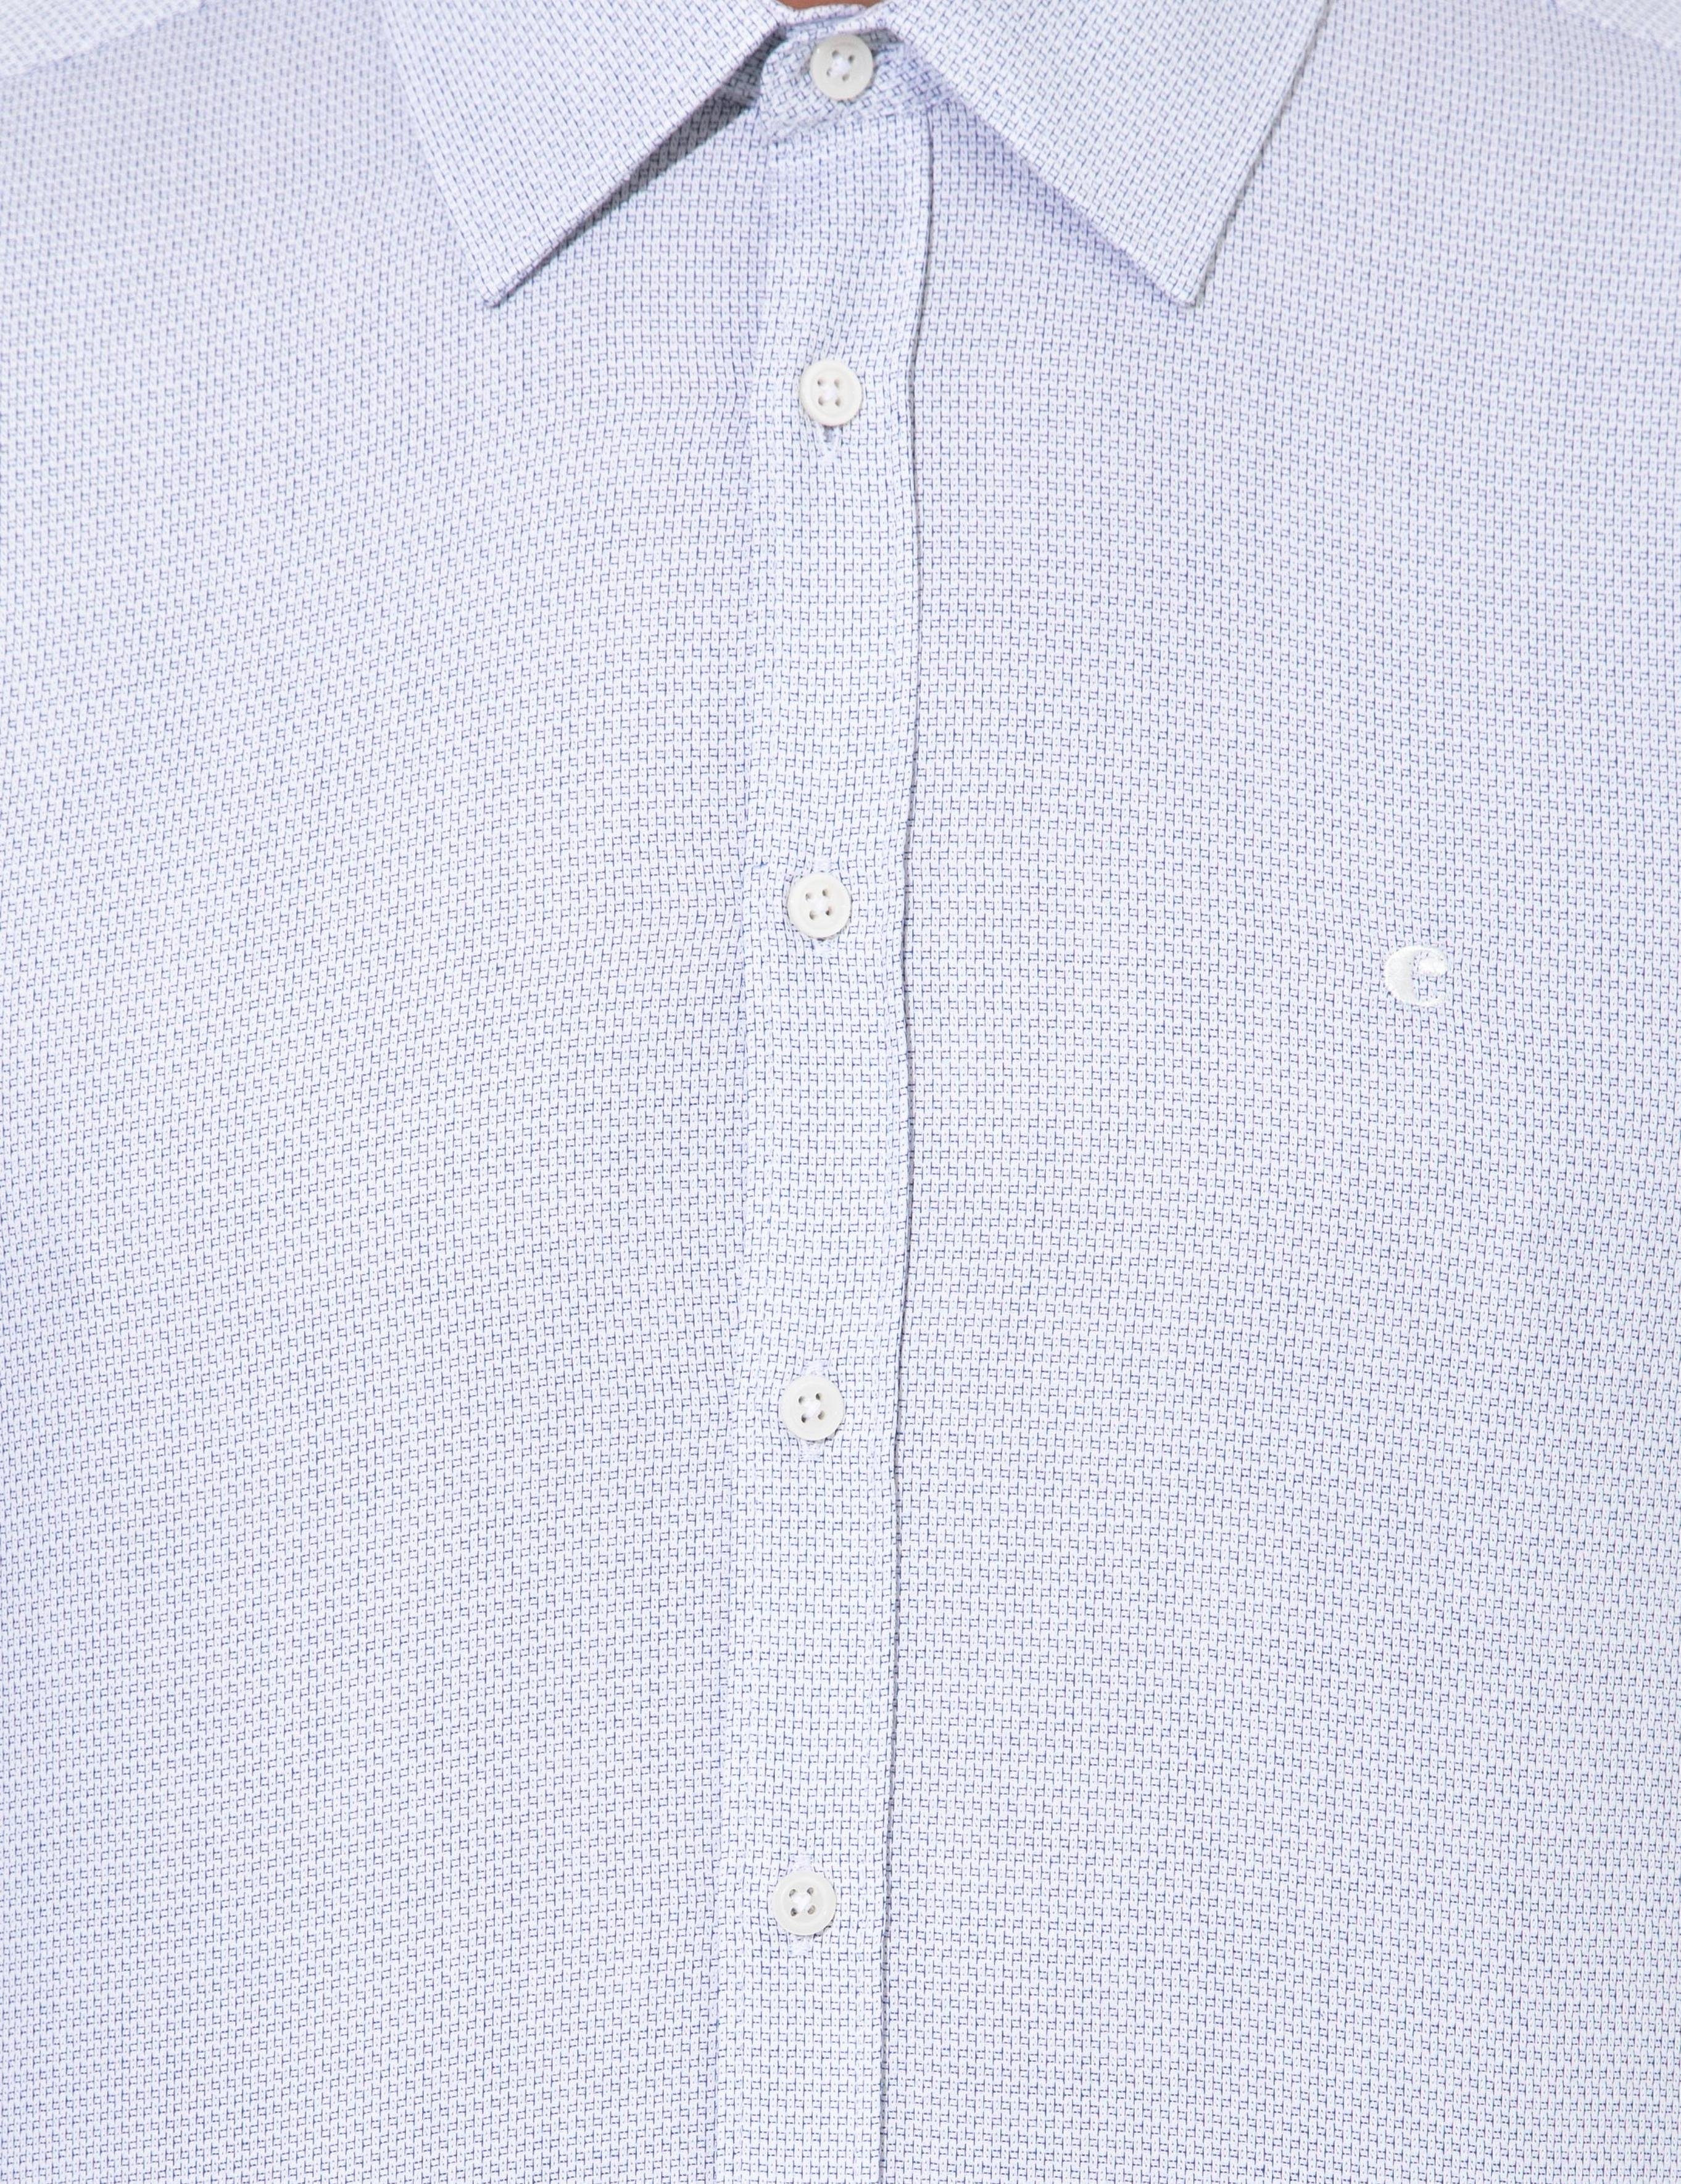 Beyaz Slim Fit Uzun Kollu Gömlek - 50210136032